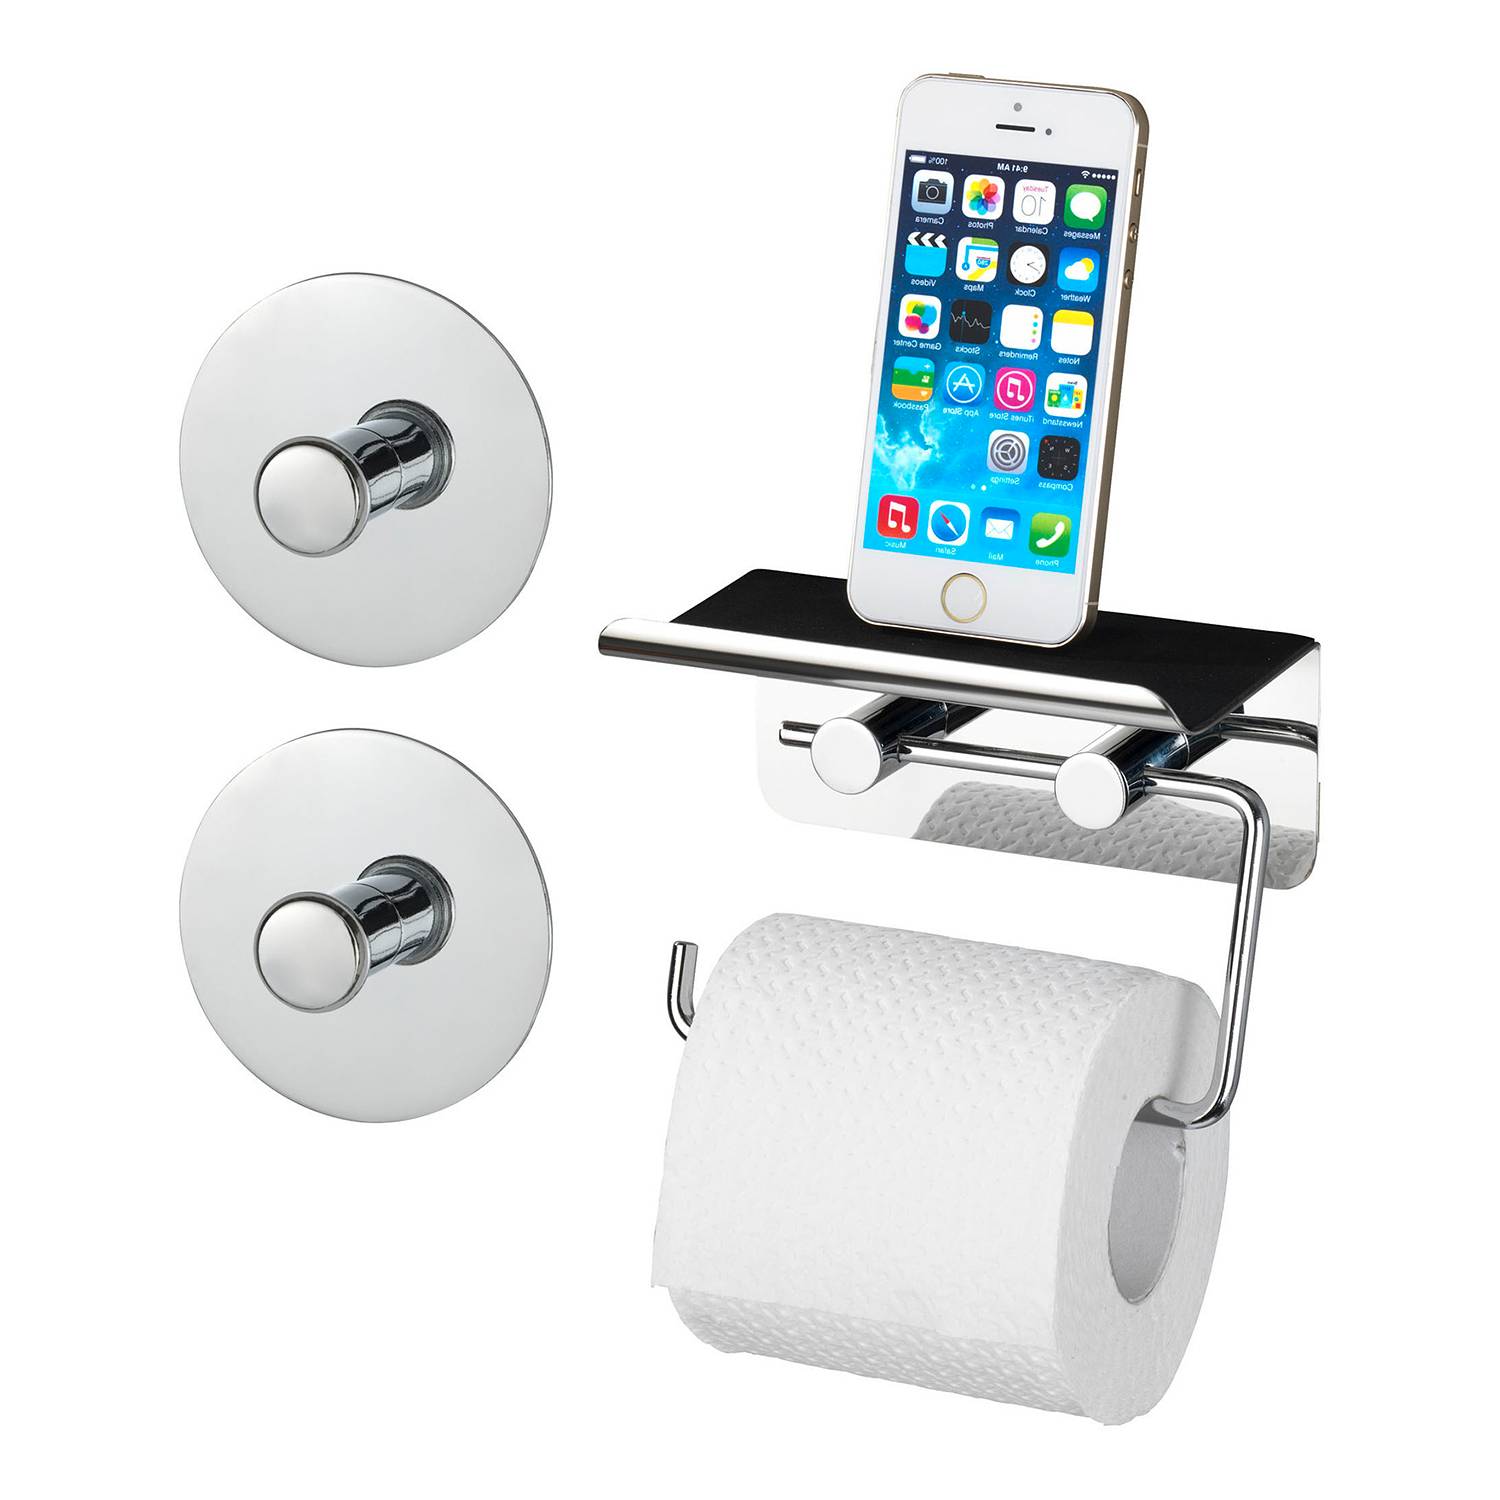 Toilettenpapierhalter kaufen | home24 Smartphone Ablage